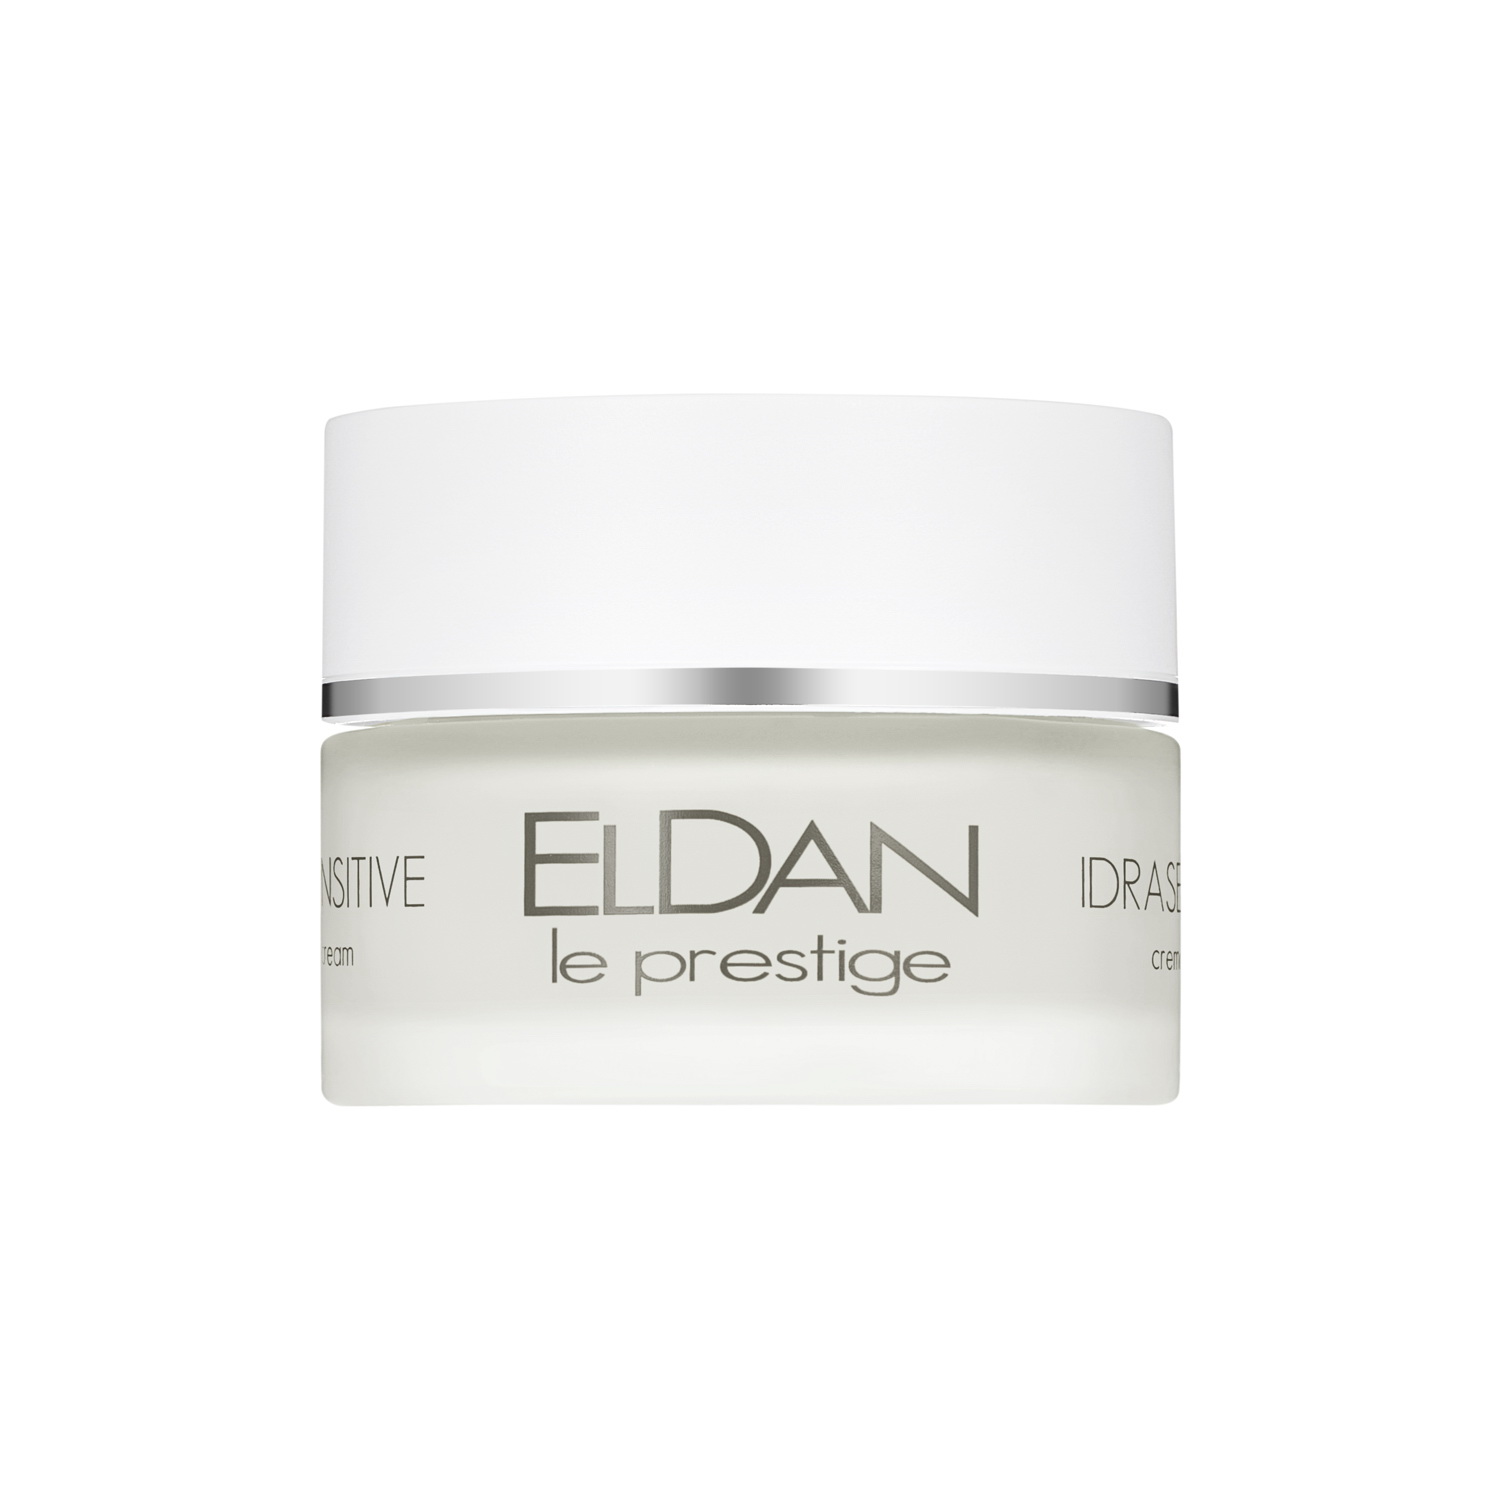 Крем для лица ELDAN Cosmetics Idrasensitive 24H Cream для чувствительной кожи, 50 мл eldan тоник лосьон очищающий для проблемной кожи le prestige 250 мл